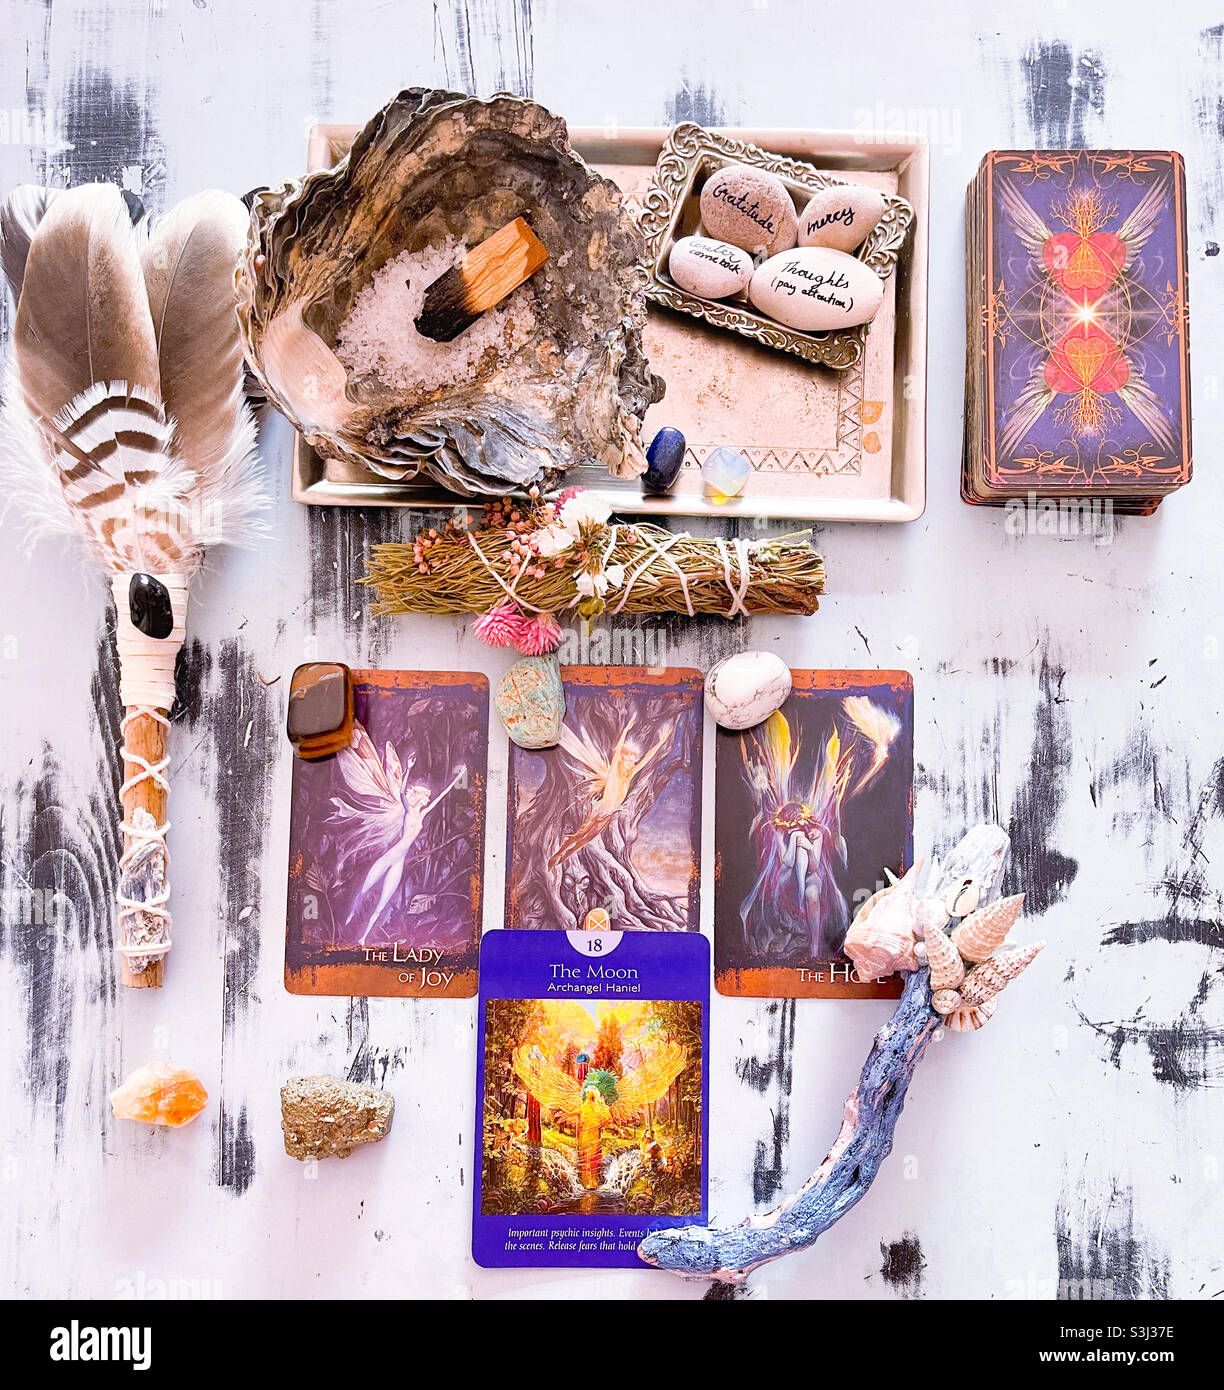 Tarot reading and magic arts Stock Photo